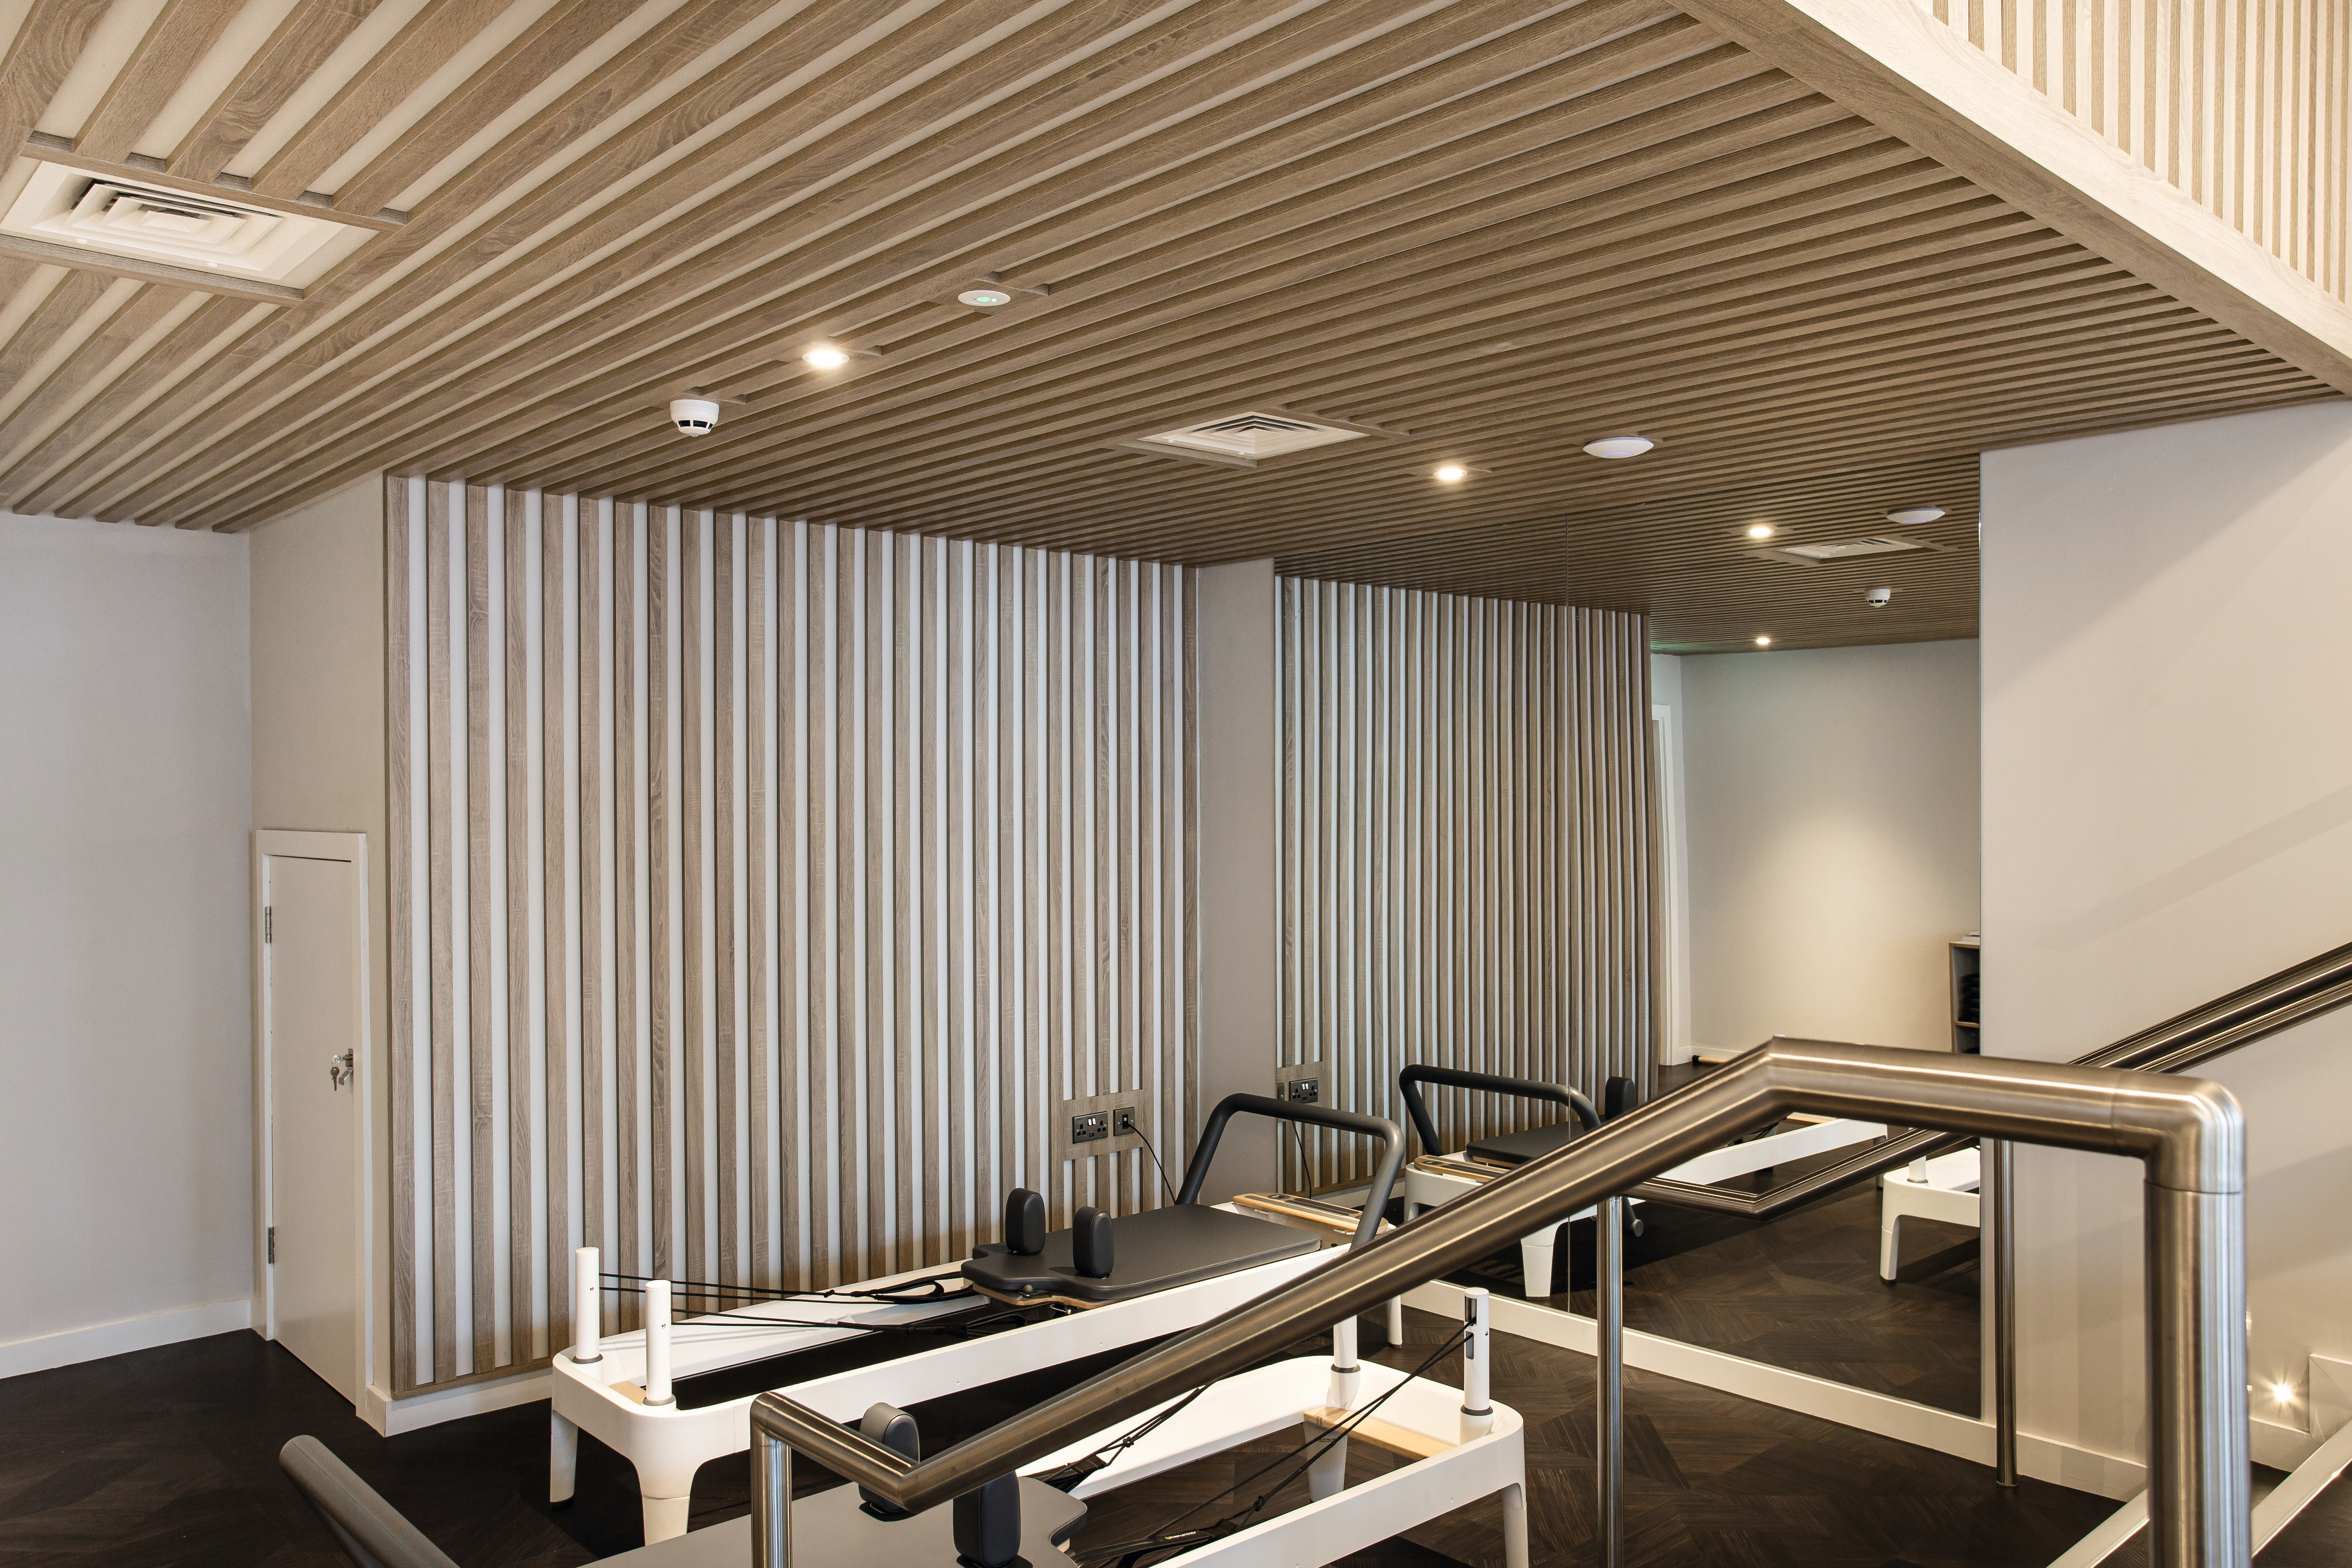 Nov studio za dobro počutje je opremljen z dekorativnimi ploščami, laminati in robnimi trakovi v enakem dekorju v vseh treh nadstropjih